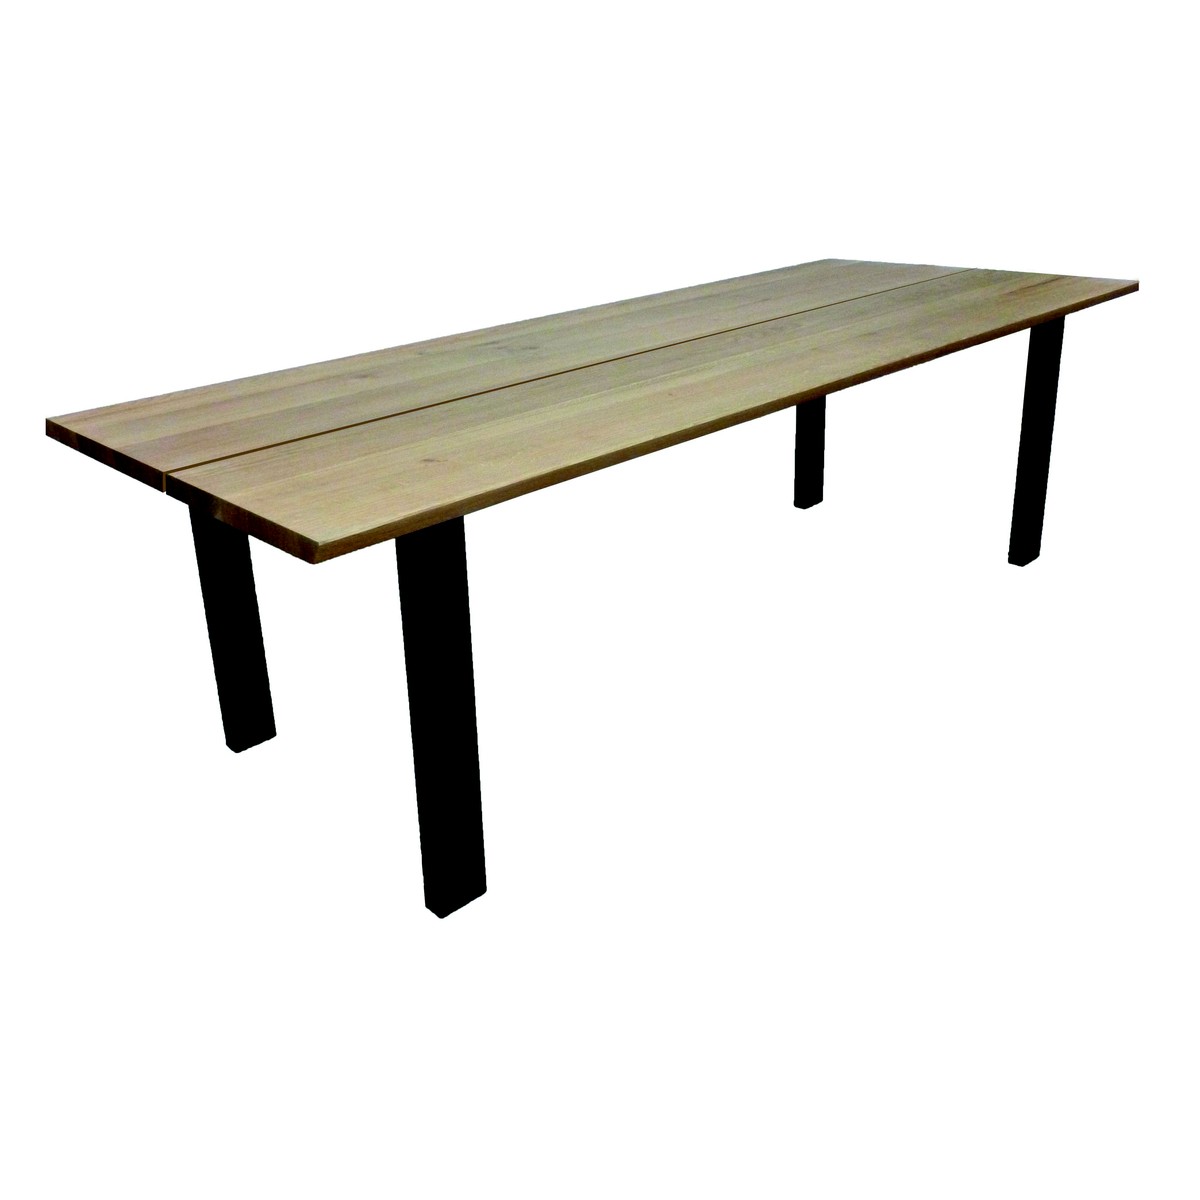   Table Jeff Droit ouvert rectangulaire  160x100x77cm